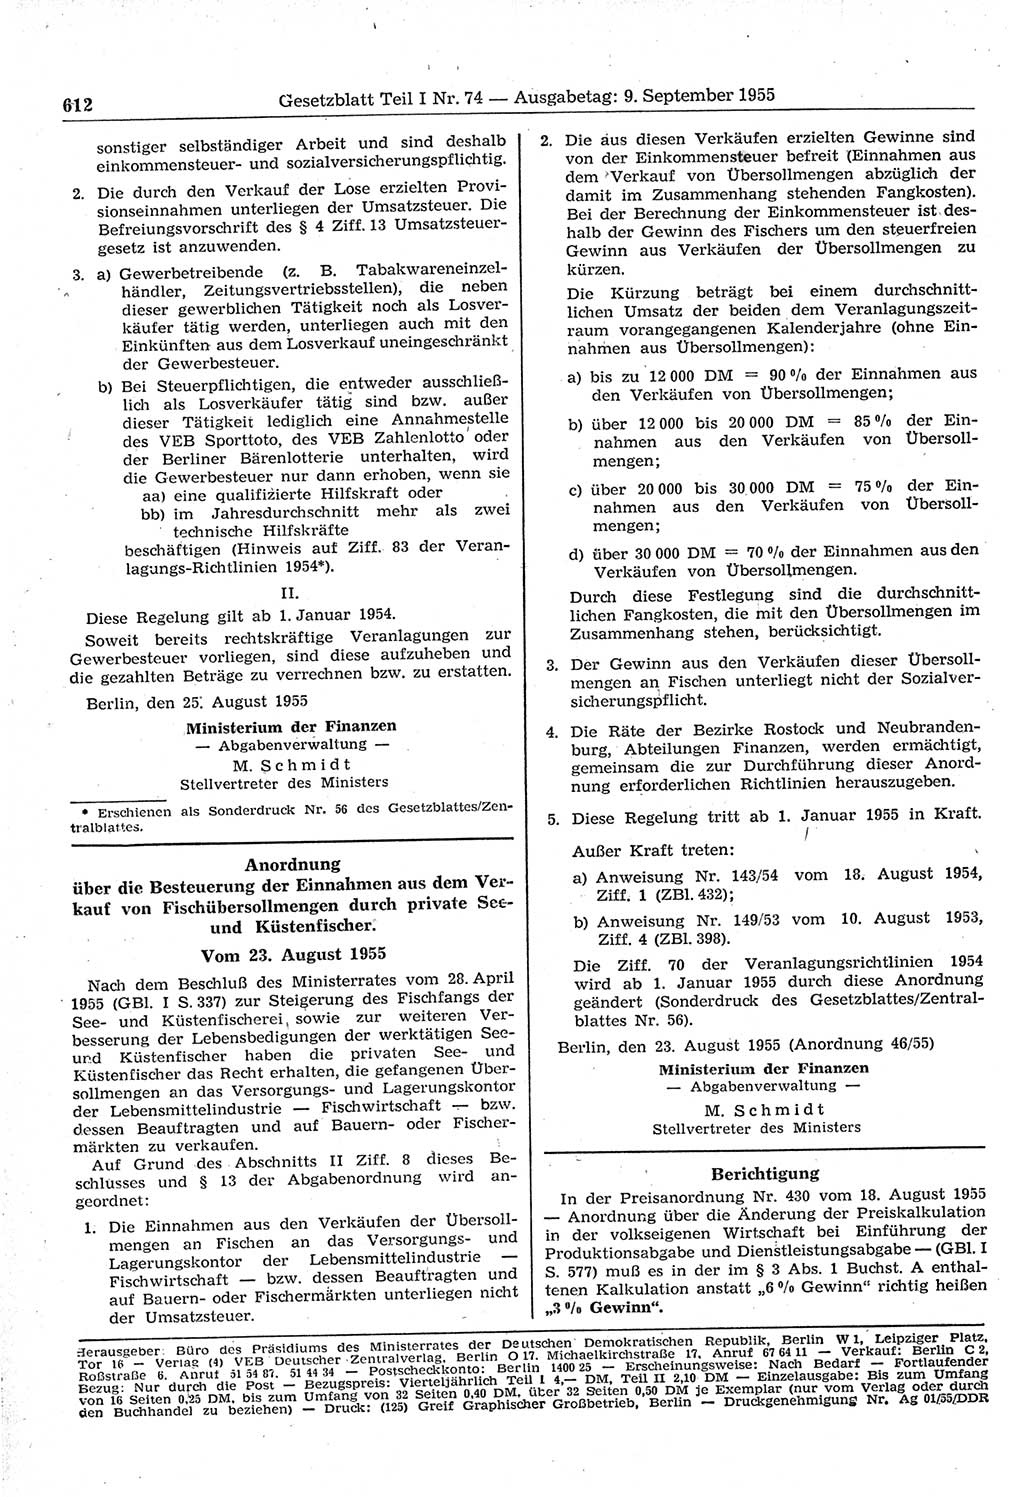 Gesetzblatt (GBl.) der Deutschen Demokratischen Republik (DDR) Teil Ⅰ 1955, Seite 612 (GBl. DDR Ⅰ 1955, S. 612)